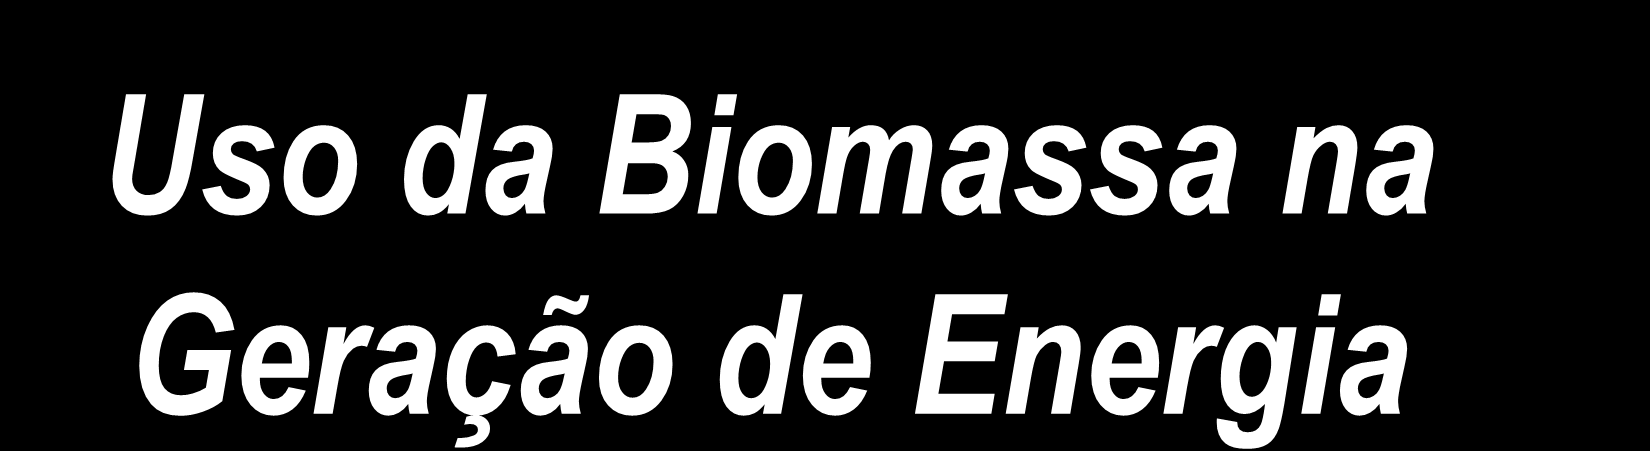 Uso da Biomassa na Geração de Energia Rui Guilherme Altieri Silva